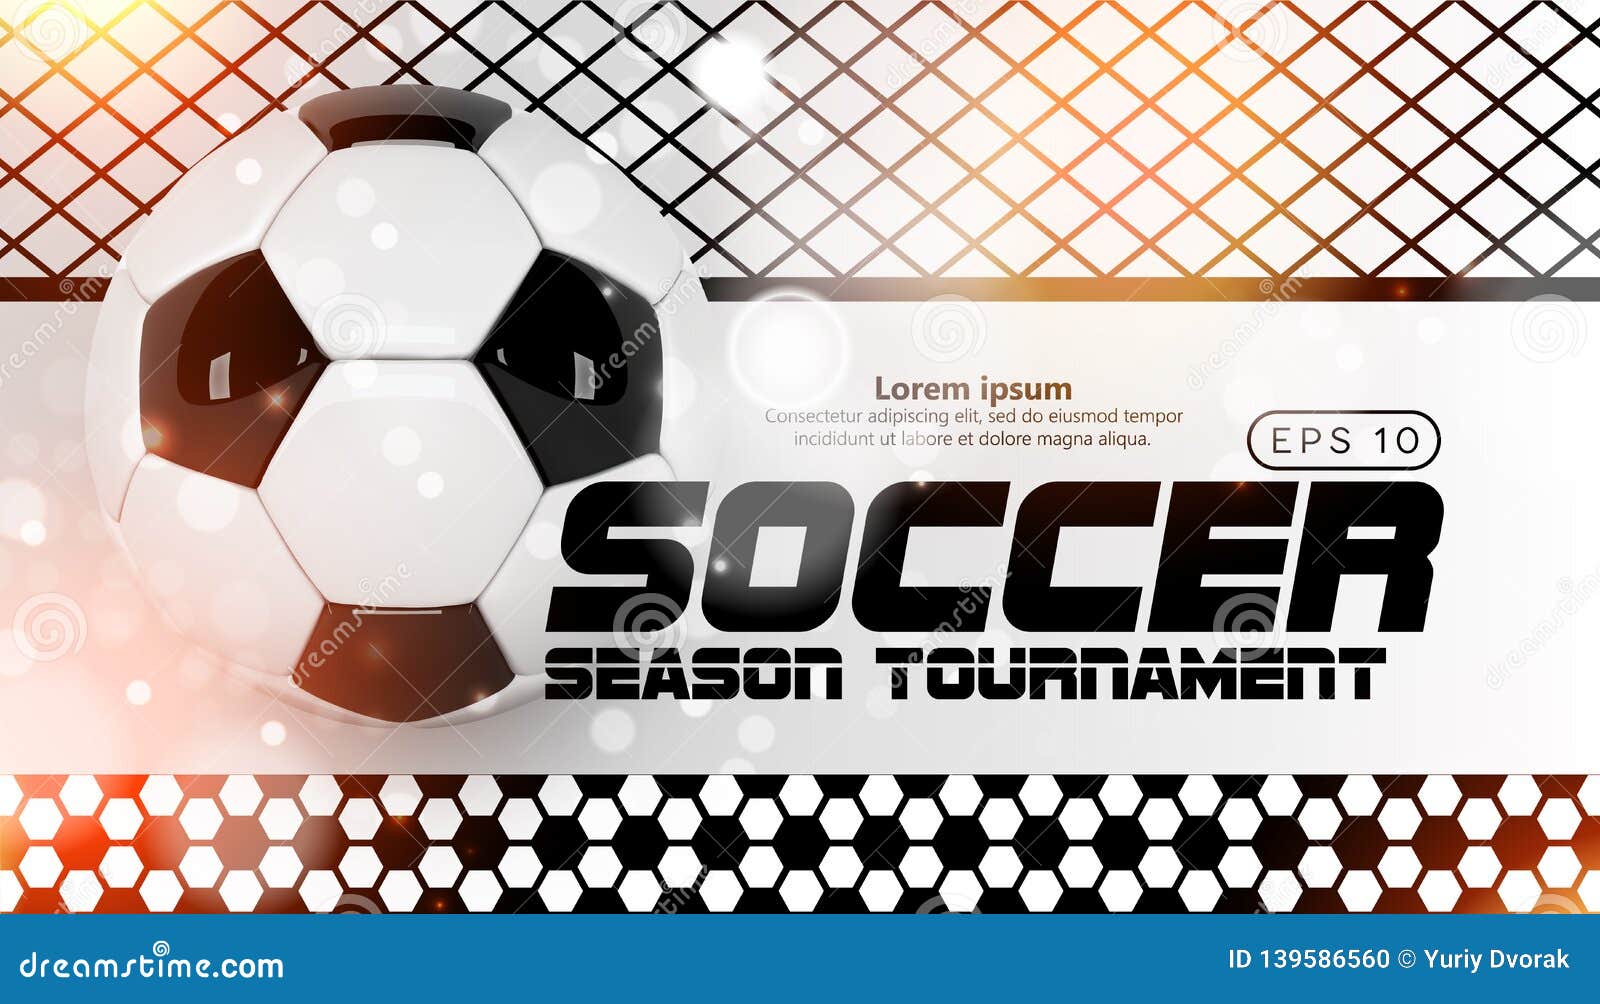 Soccer Scoreboard Poster Design Vector. Football Ball Design Concept ...